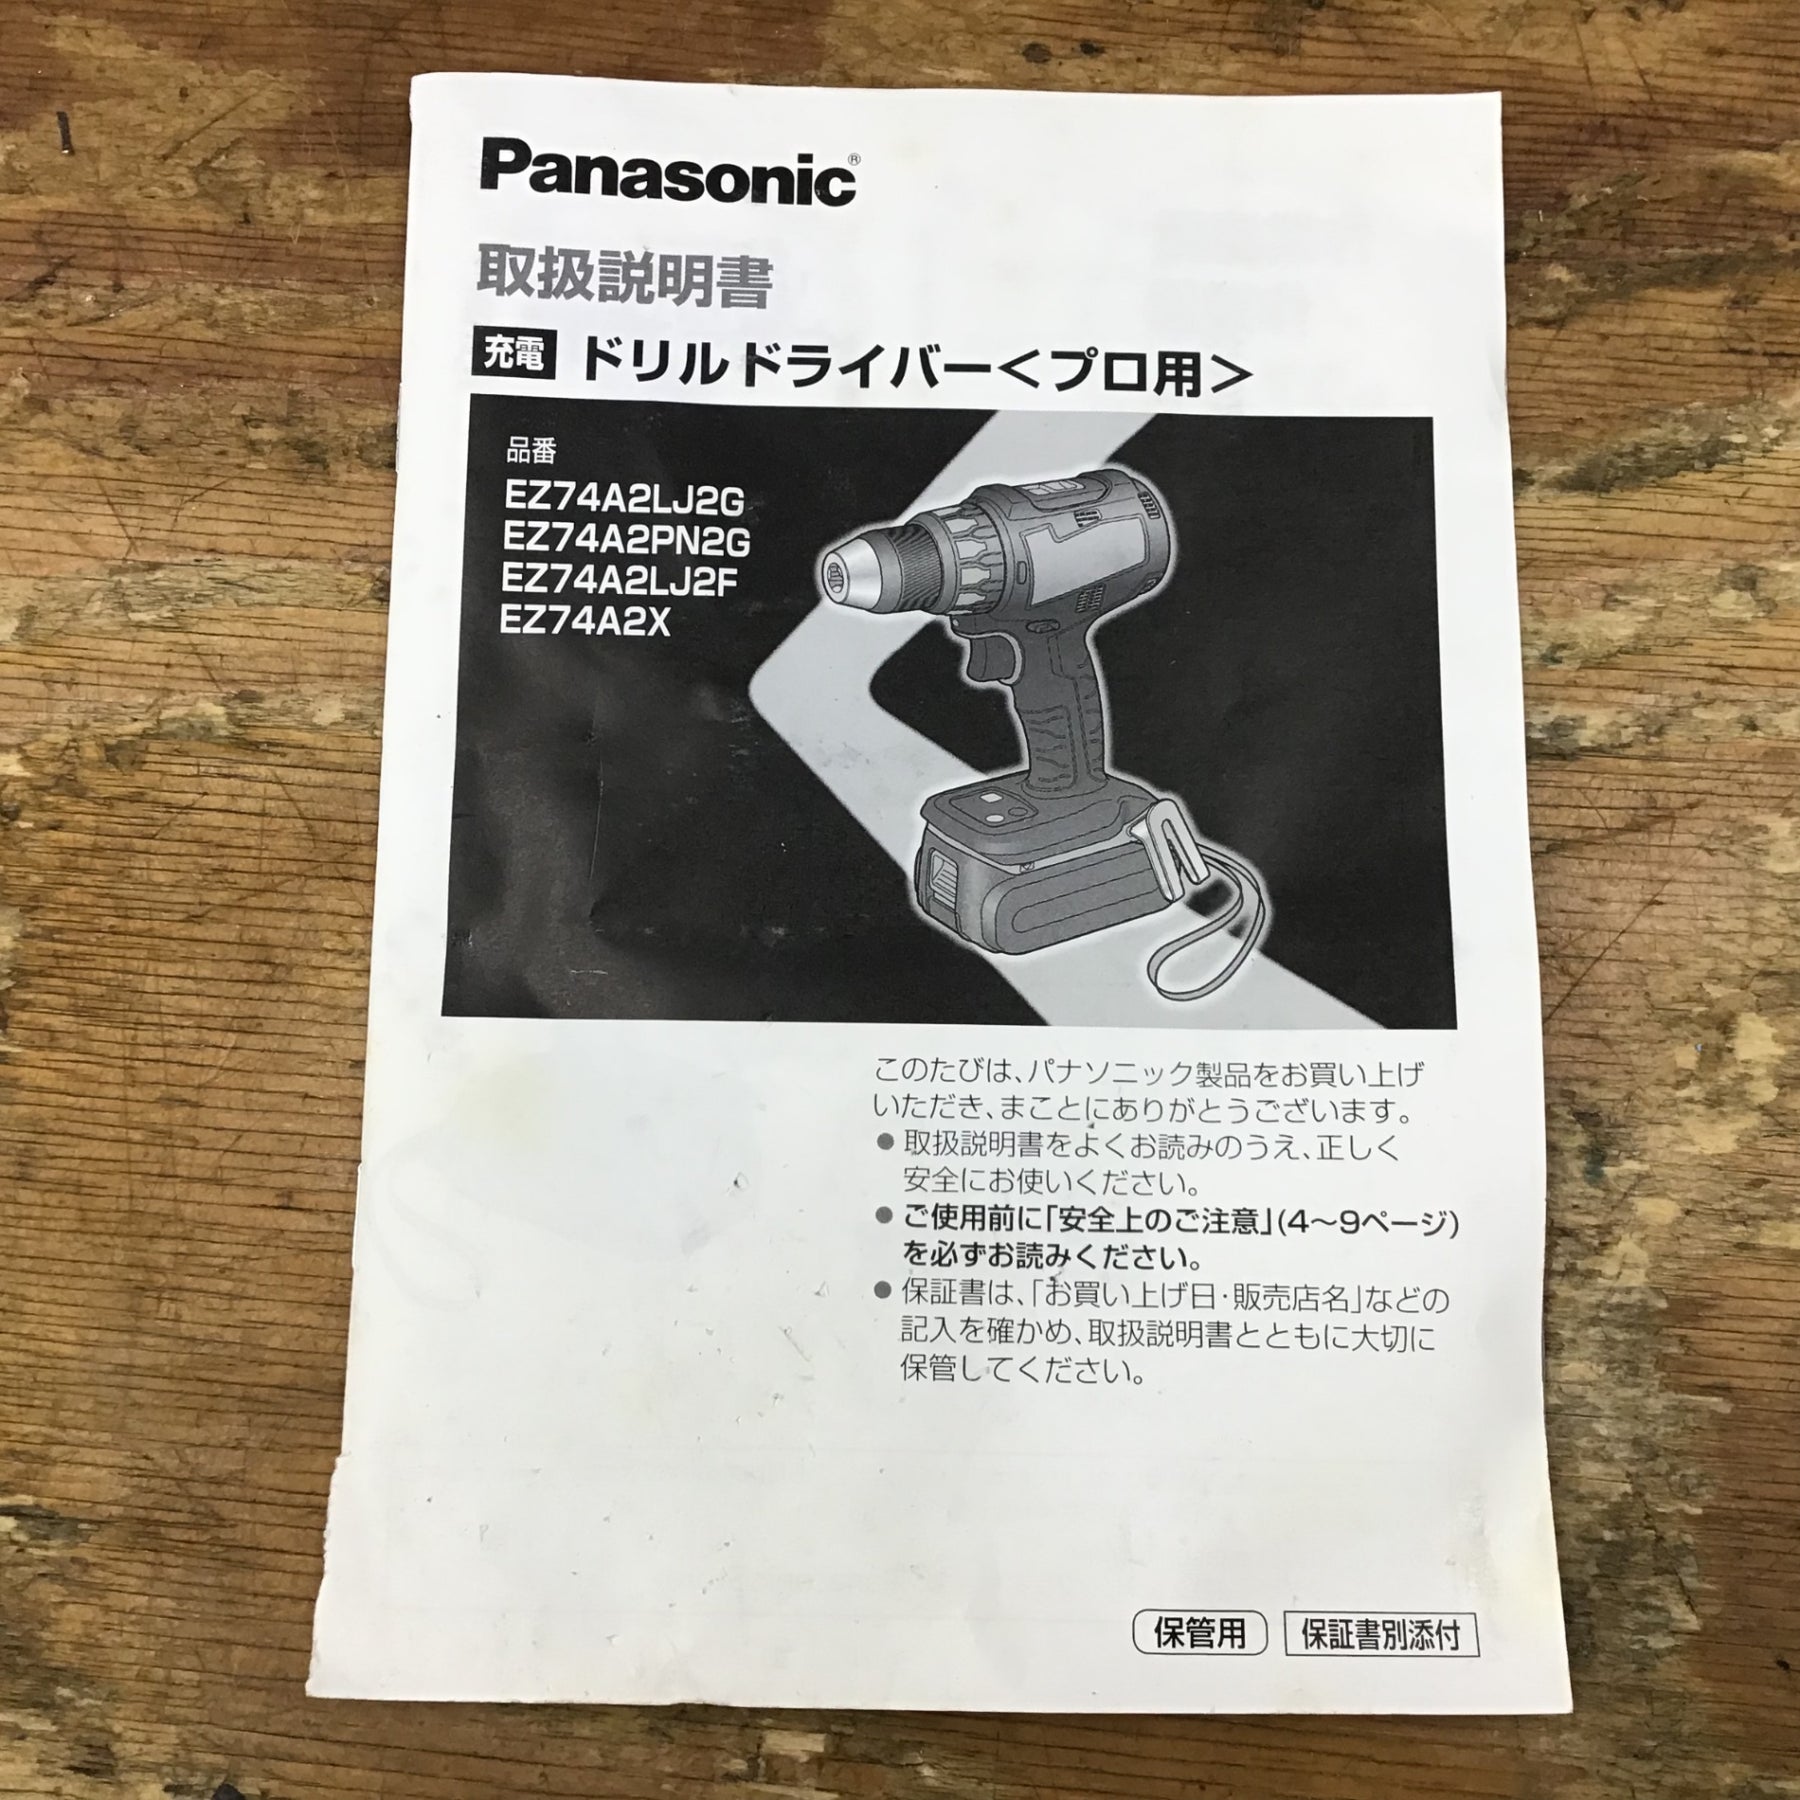 ☆パナソニック(Panasonic) コードレスドリルドライバー EZ74A2PN2G-R【柏店】 – アクトツールオンラインショップ